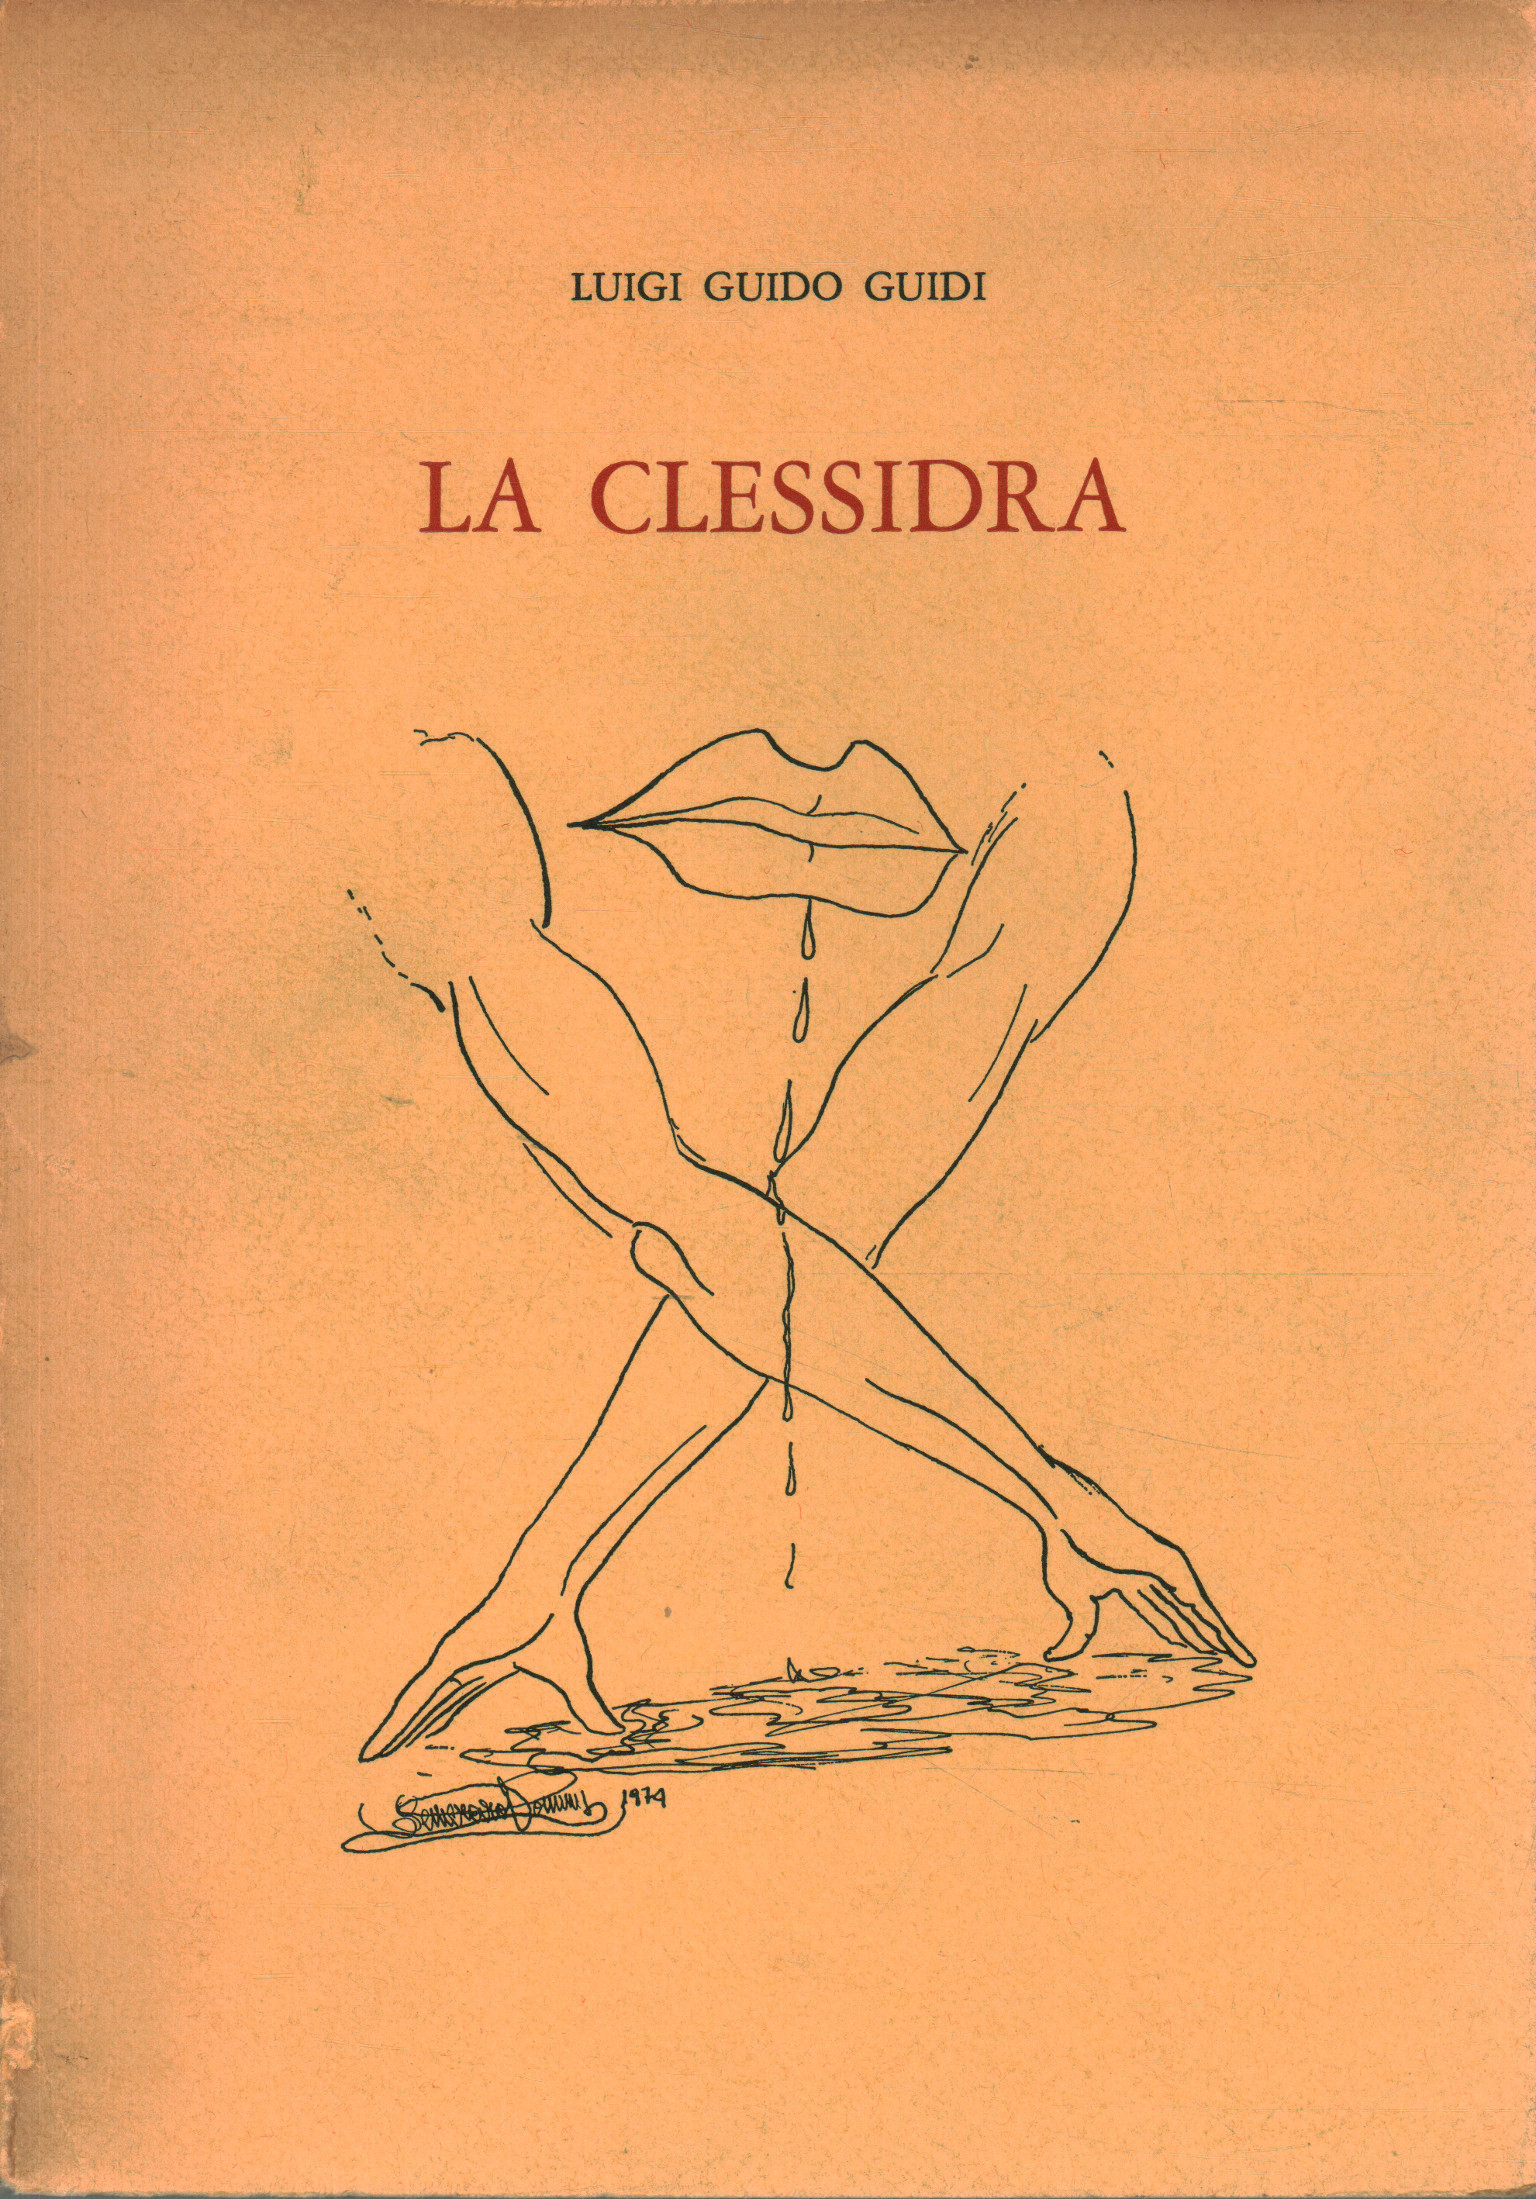 La clessidra, Luigi Guido Guidi